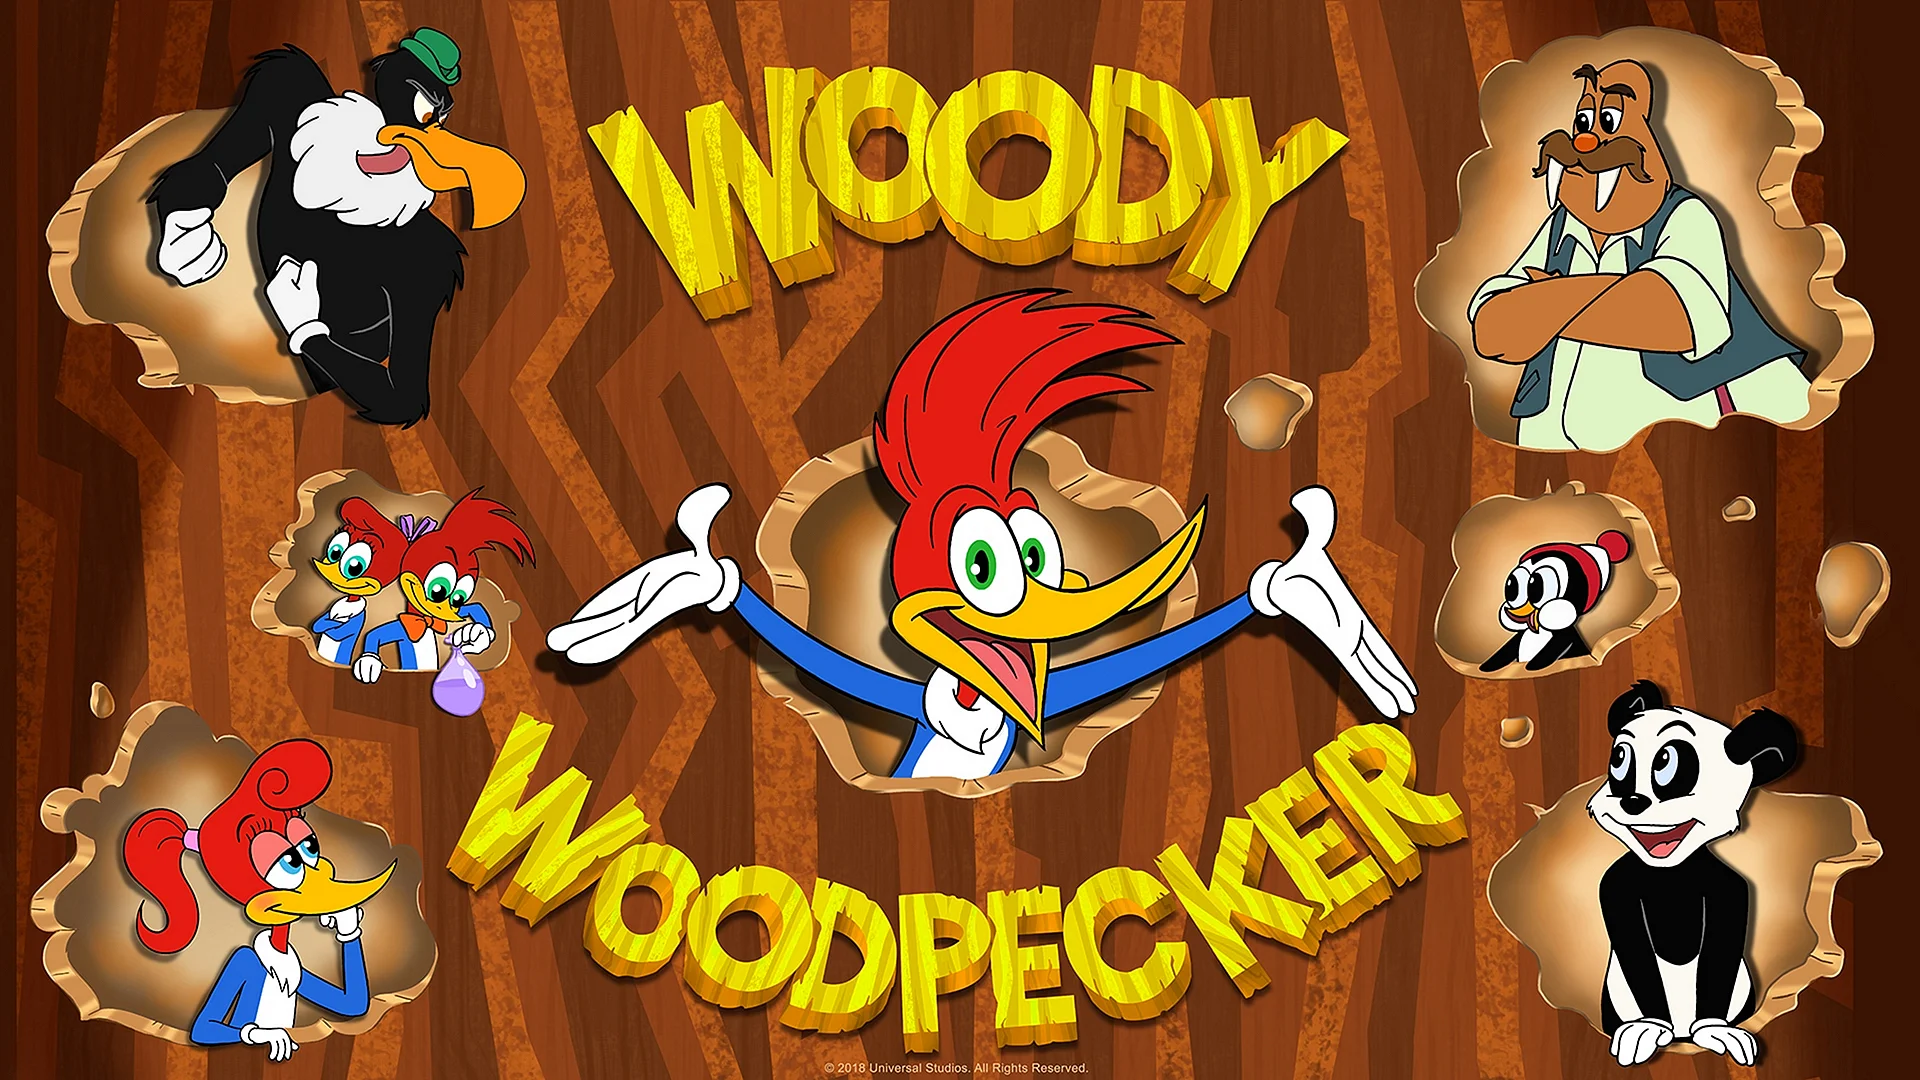 Woody Woodpecker 2018 Wallpaper